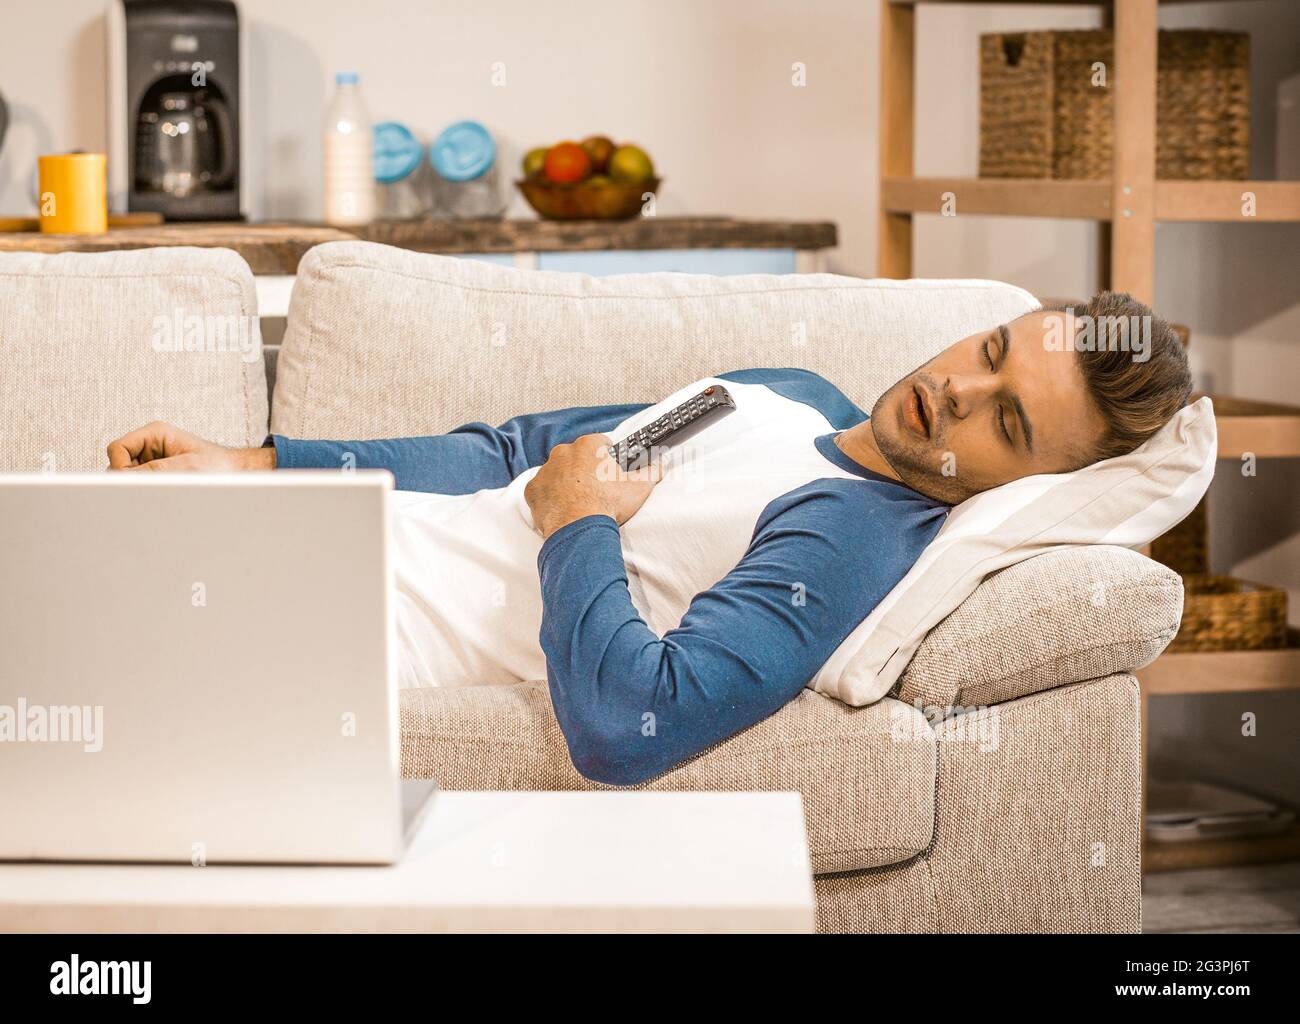 La vie domestique et la détente masculine sur le canapé à la maison Banque D'Images